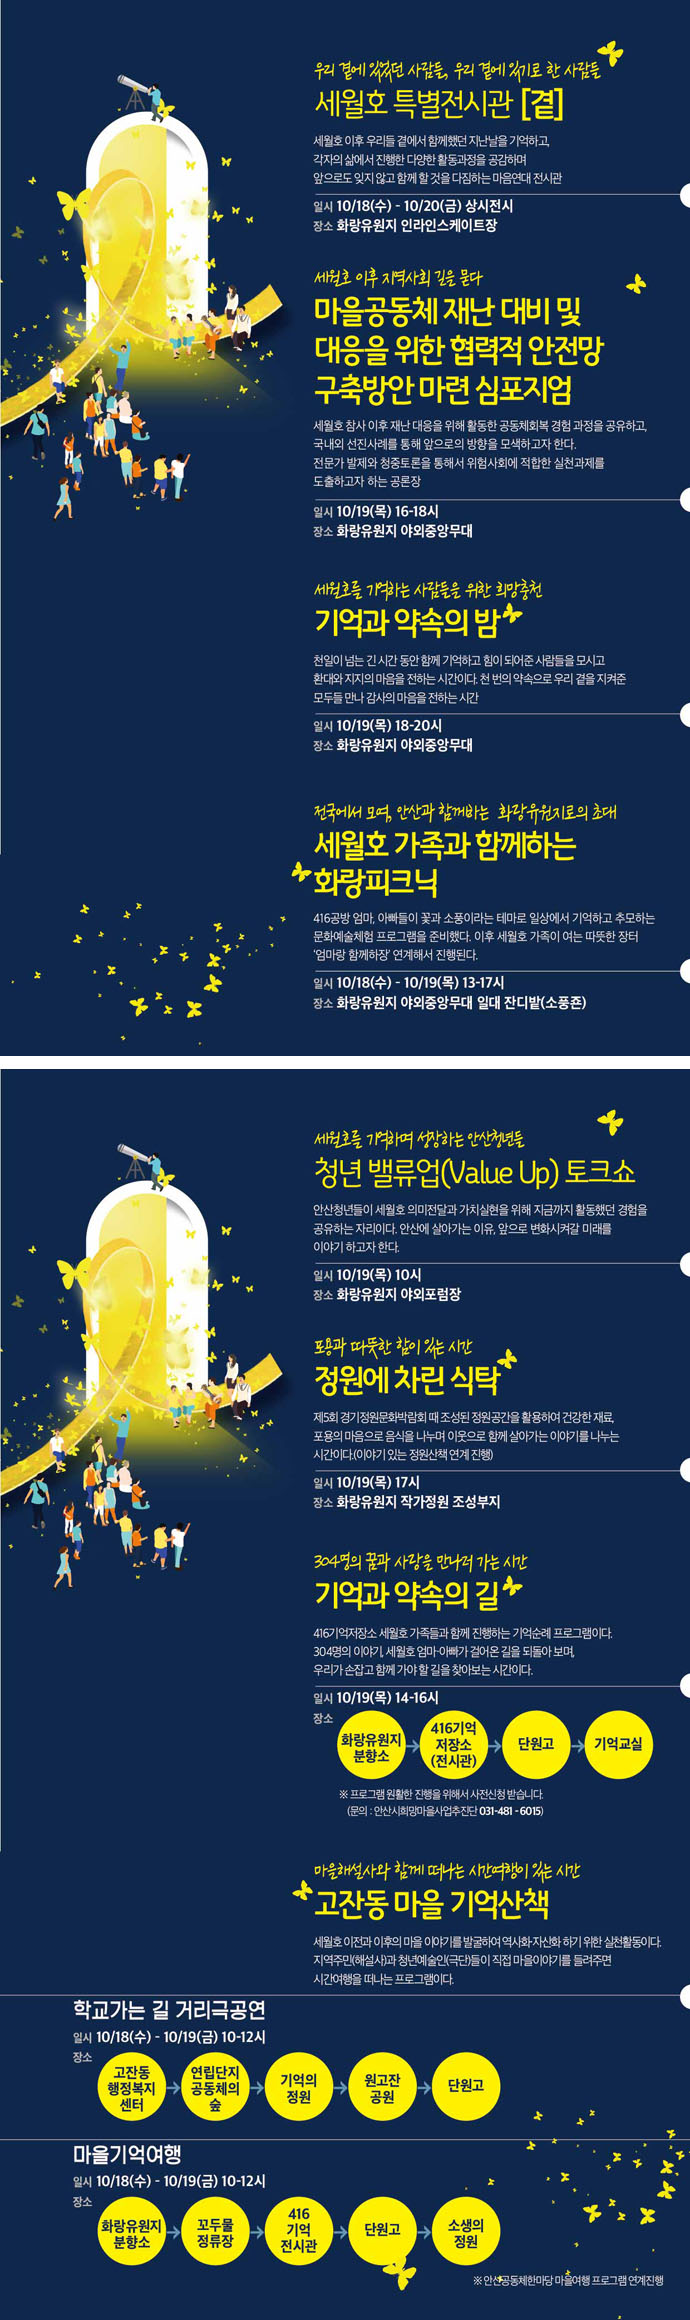 세월호-기억과 약속의 밤 홍보 포스터 2